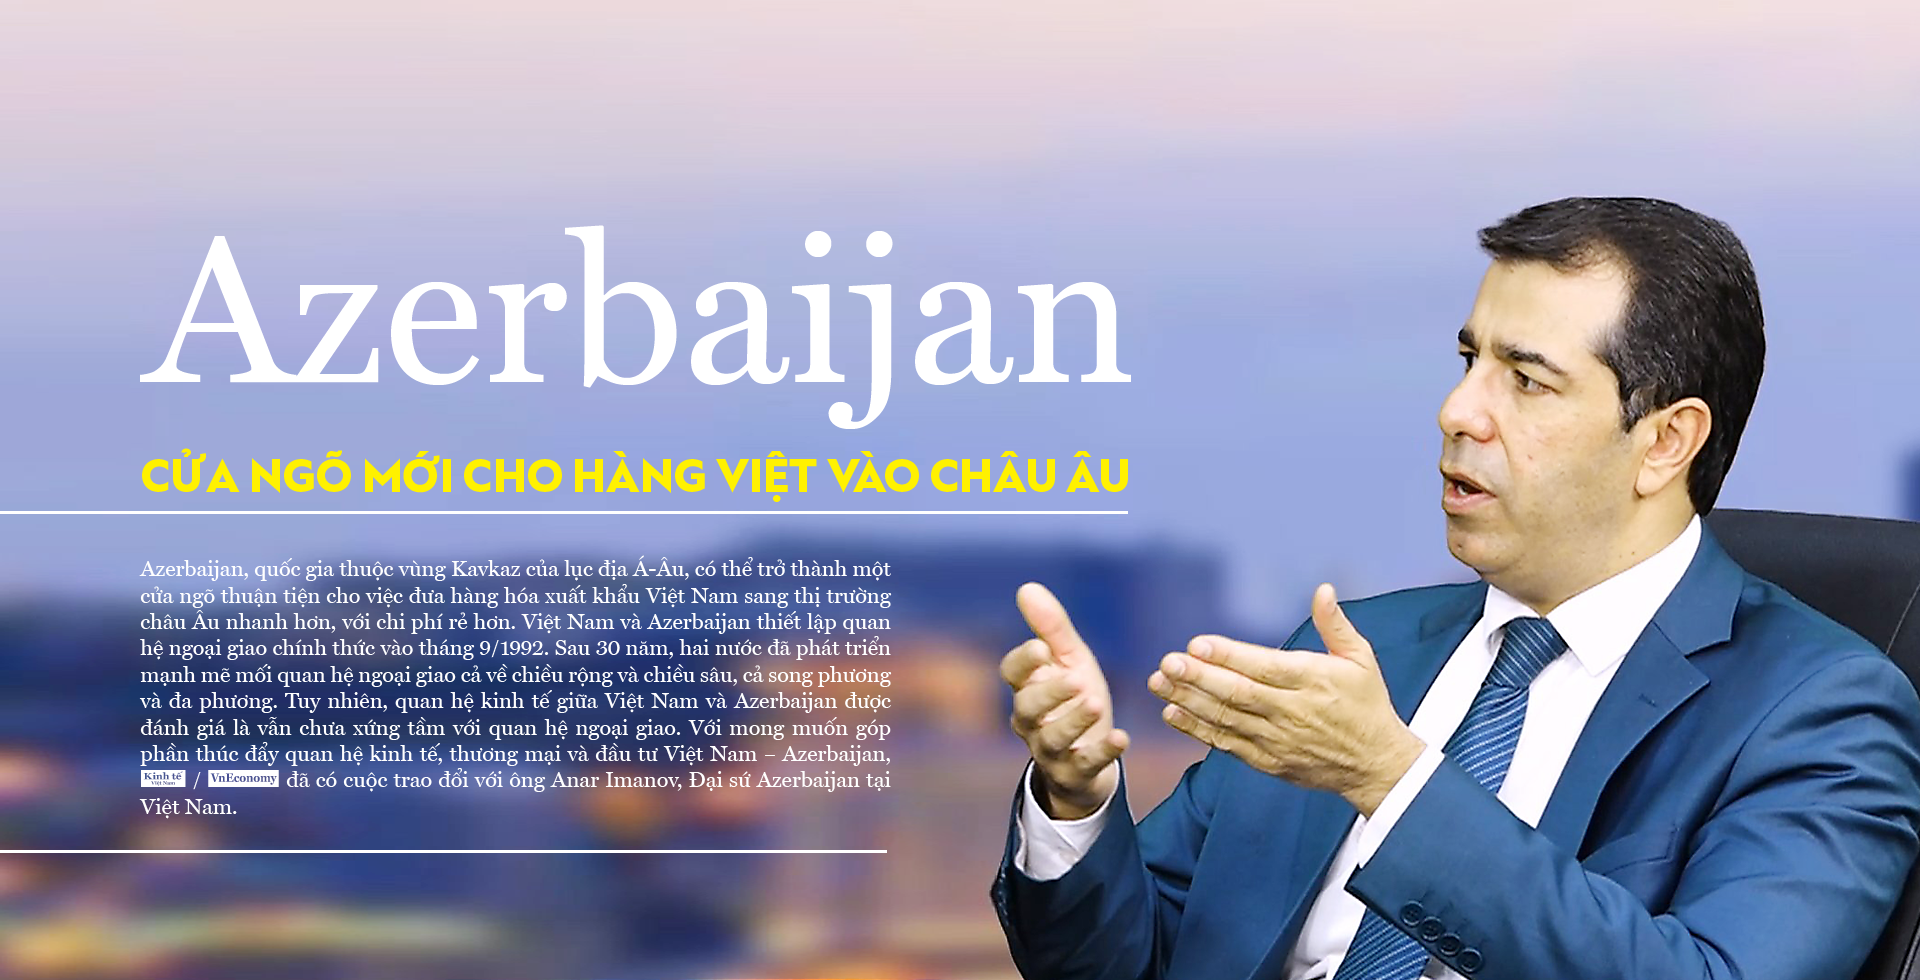 Azerbaijan - cửa ngõ mới cho hàng Việt vào châu Âu - Ảnh 1